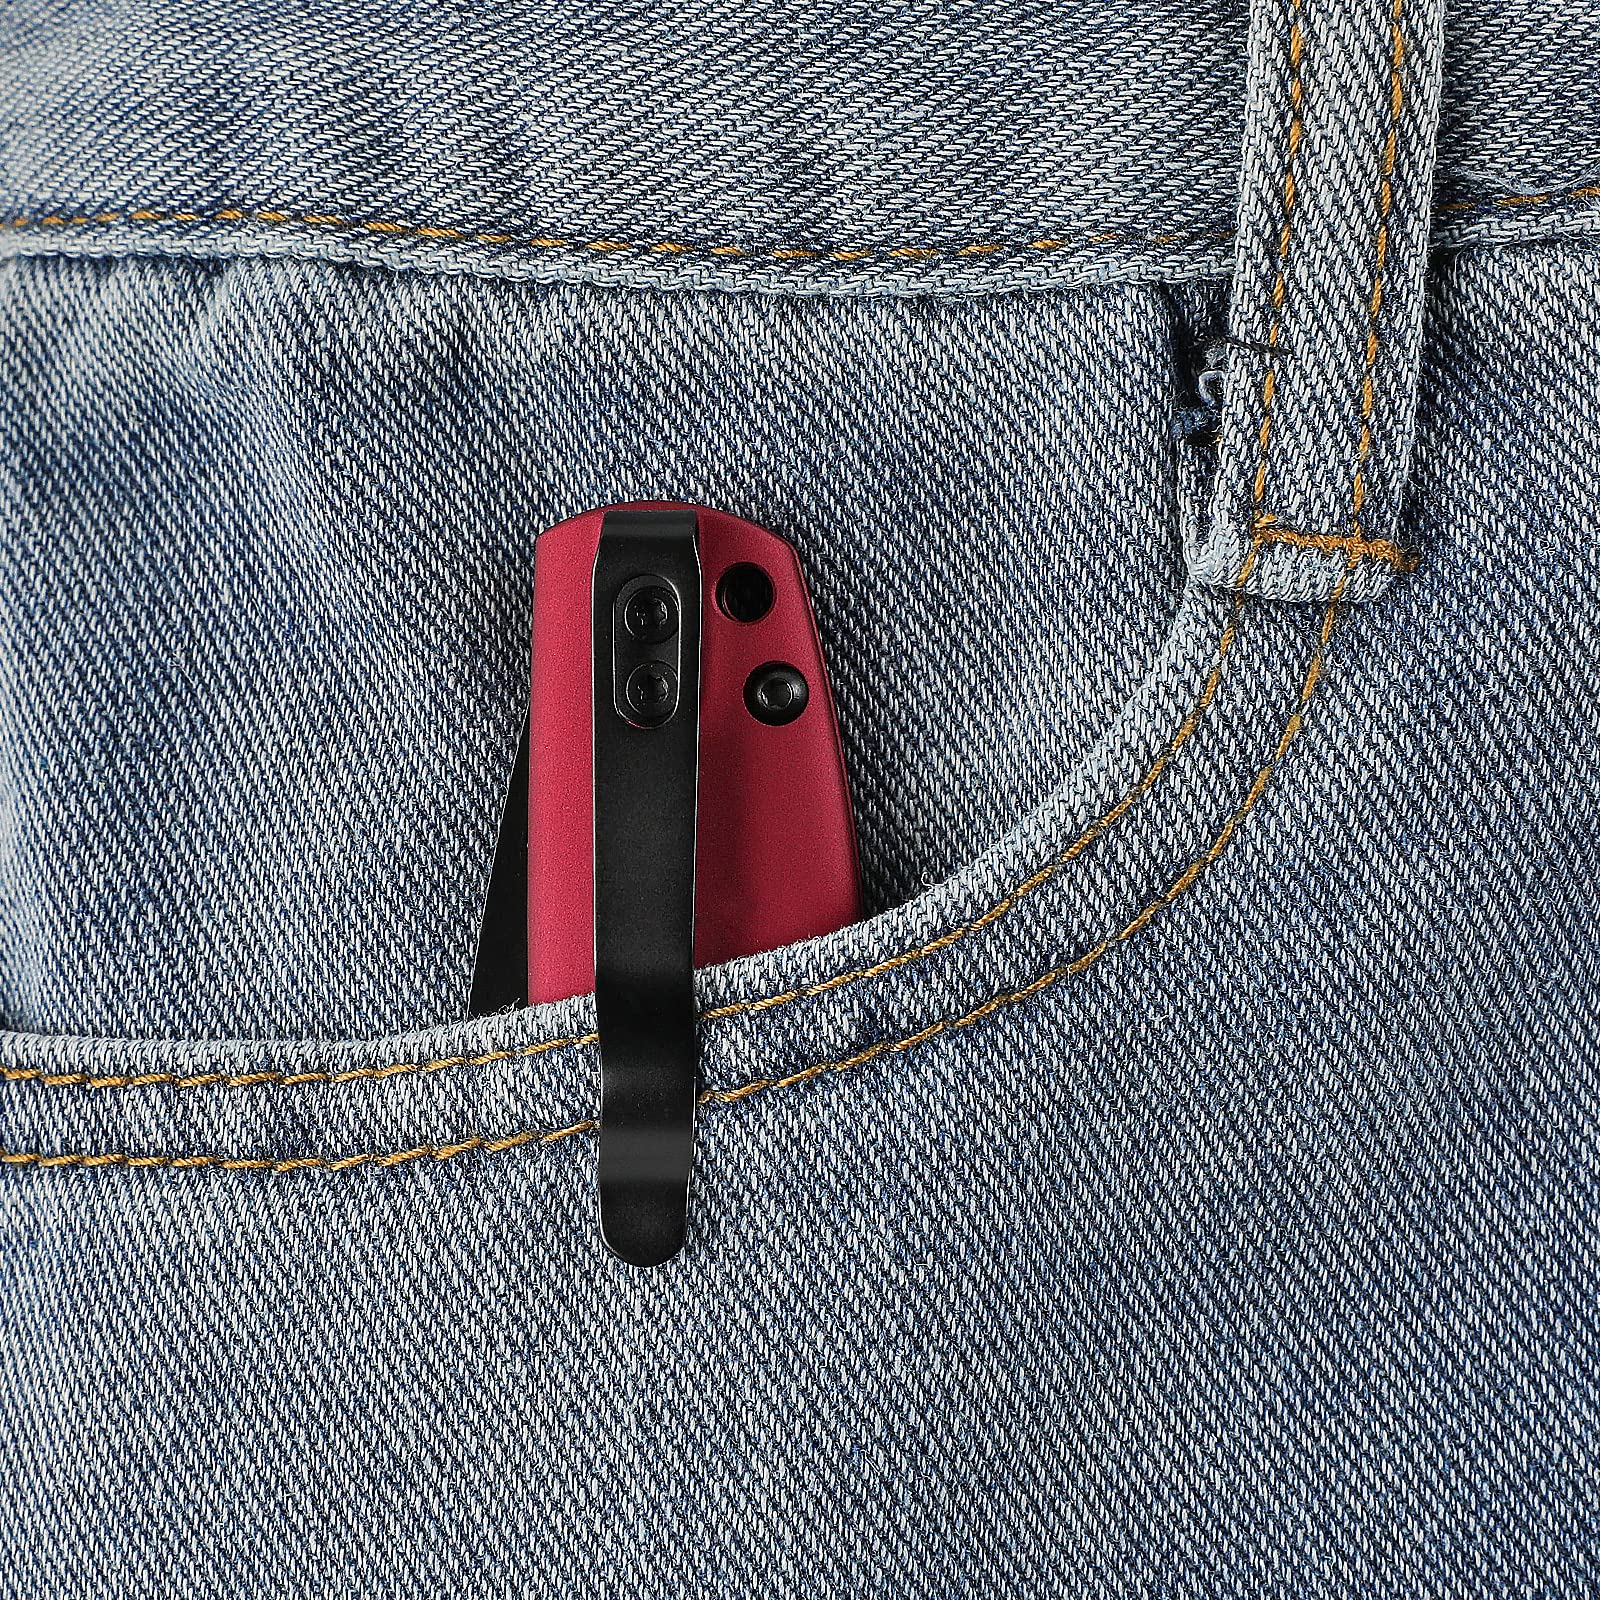 Kizer Gemini Mini Red Matte Aluminum Pocket Knife, Black Coated N690 Blade Flipper Knife with Clip for EDC,V2471E1